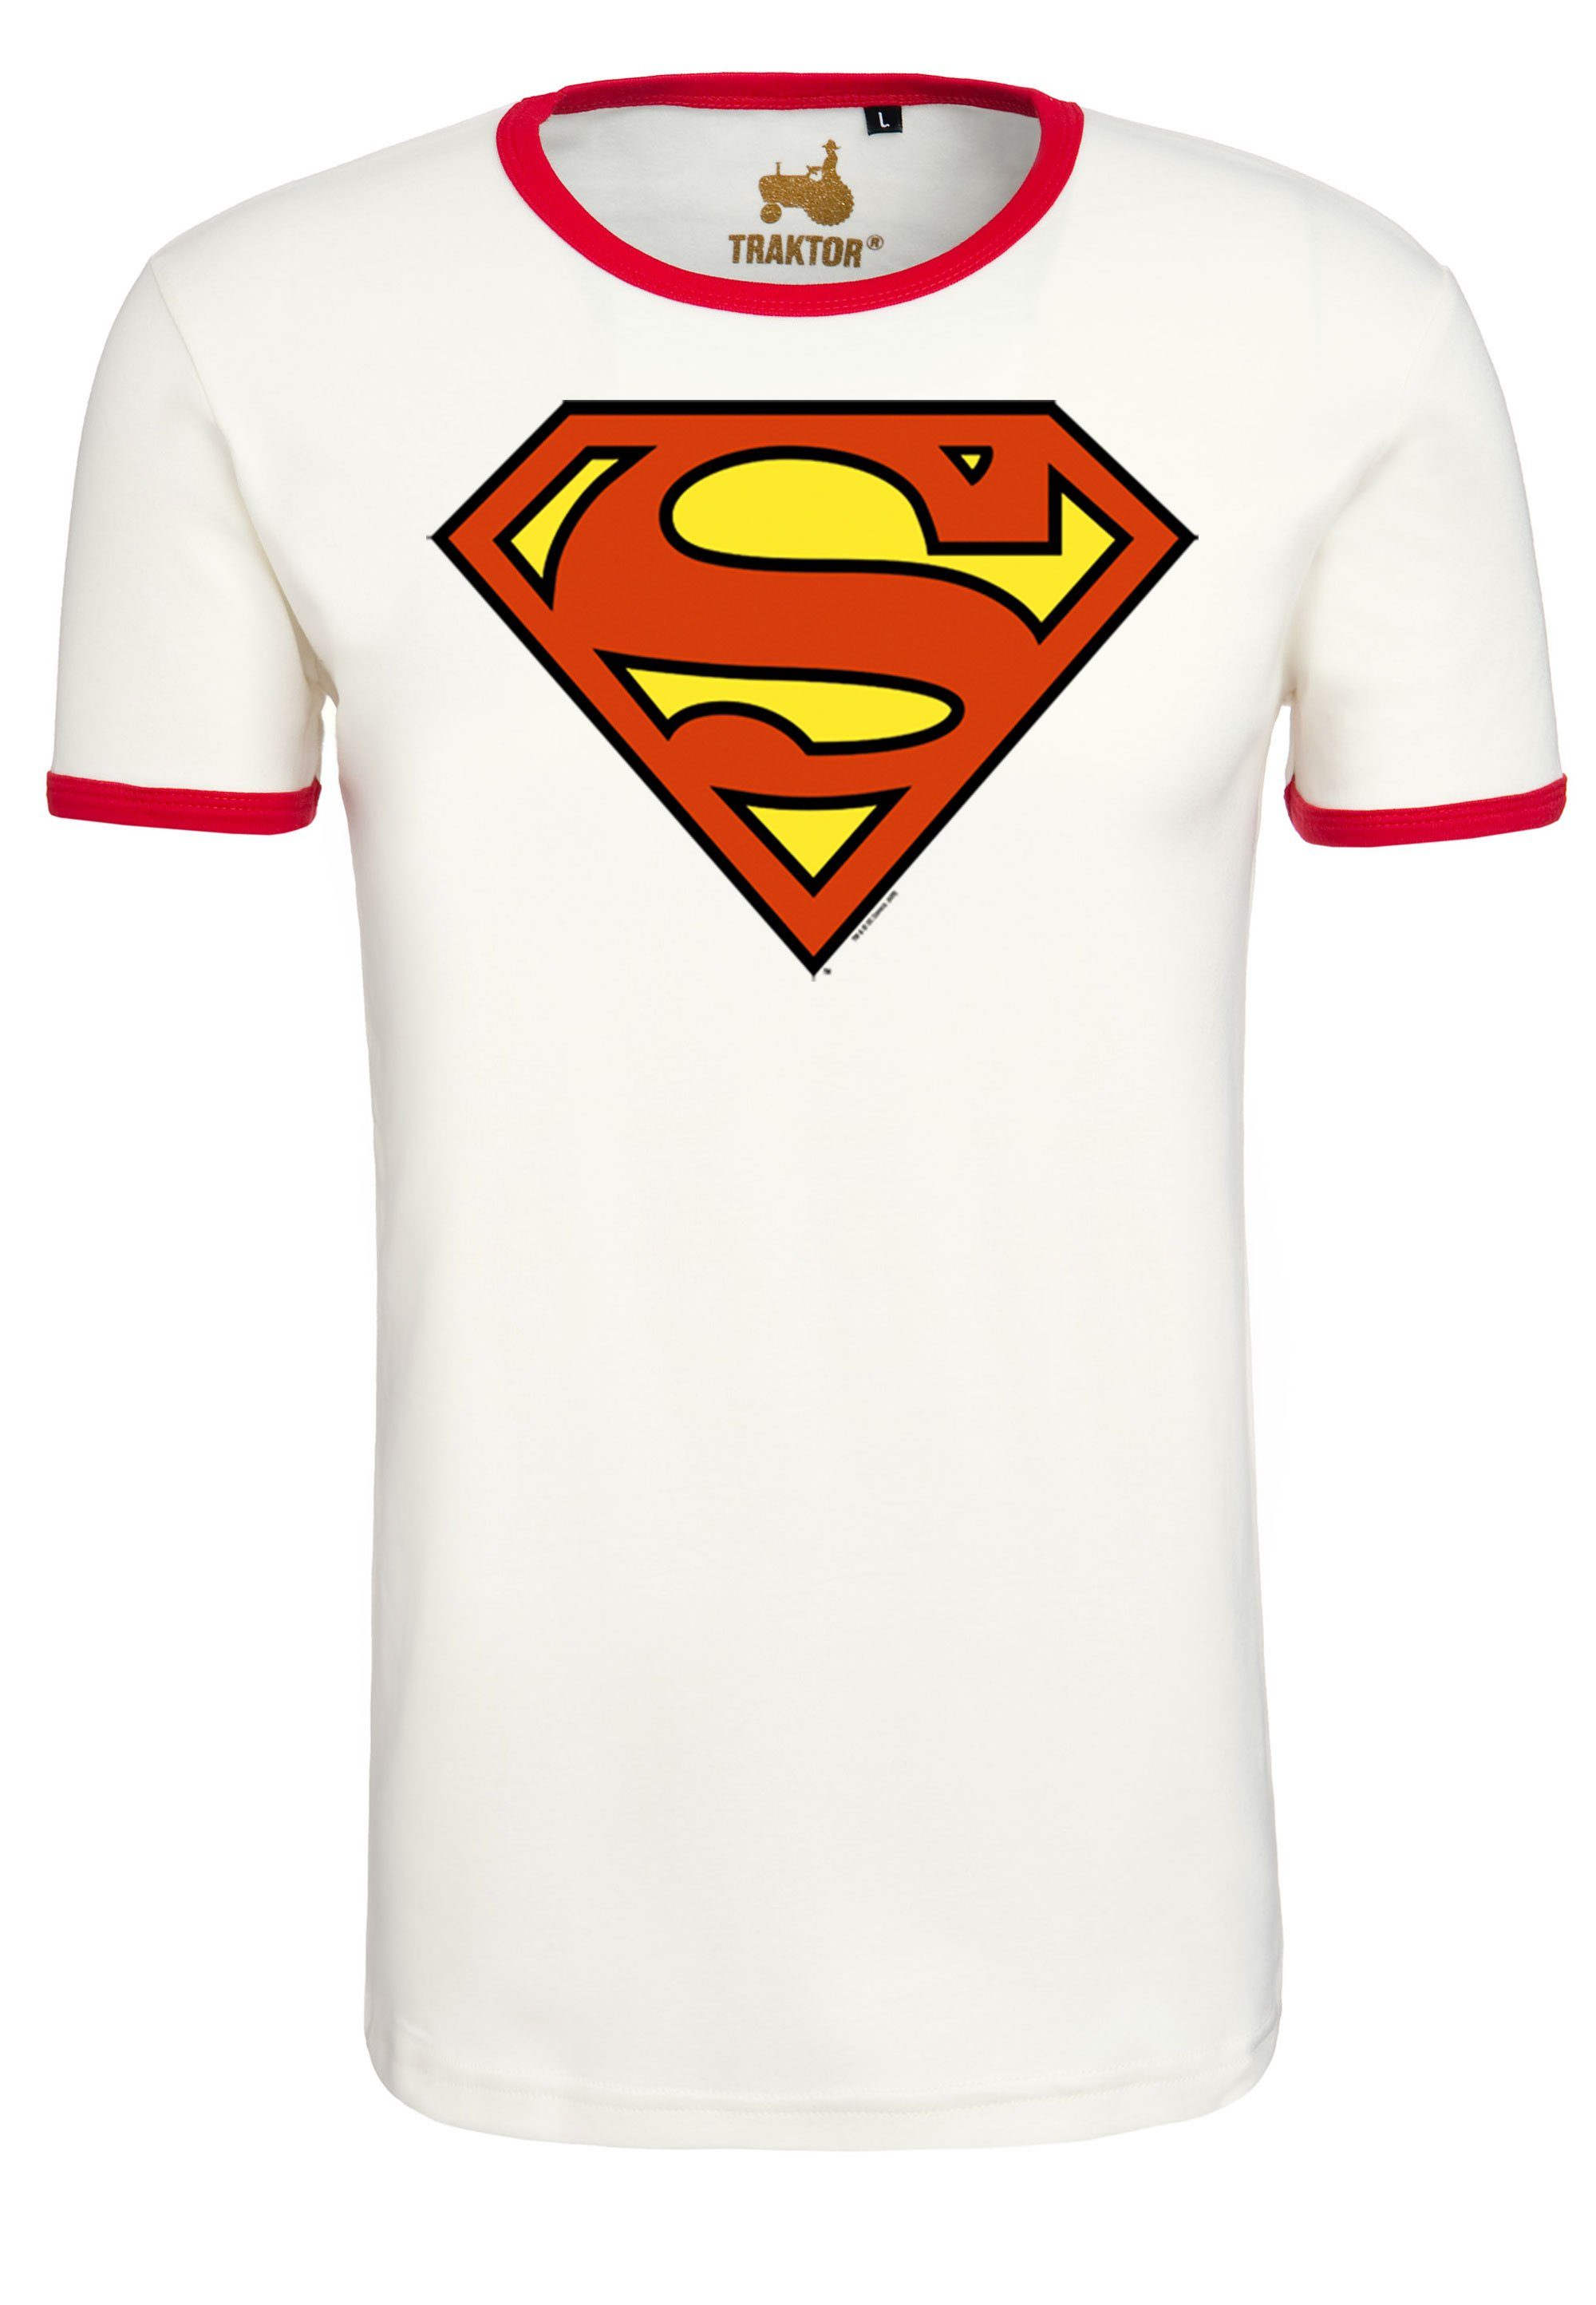 LOGOSHIRT T-Shirt Superman Logo mit trendigem Superhelden-Print,  Authentisches, offiziell lizenziertes Grafik T-Shirt